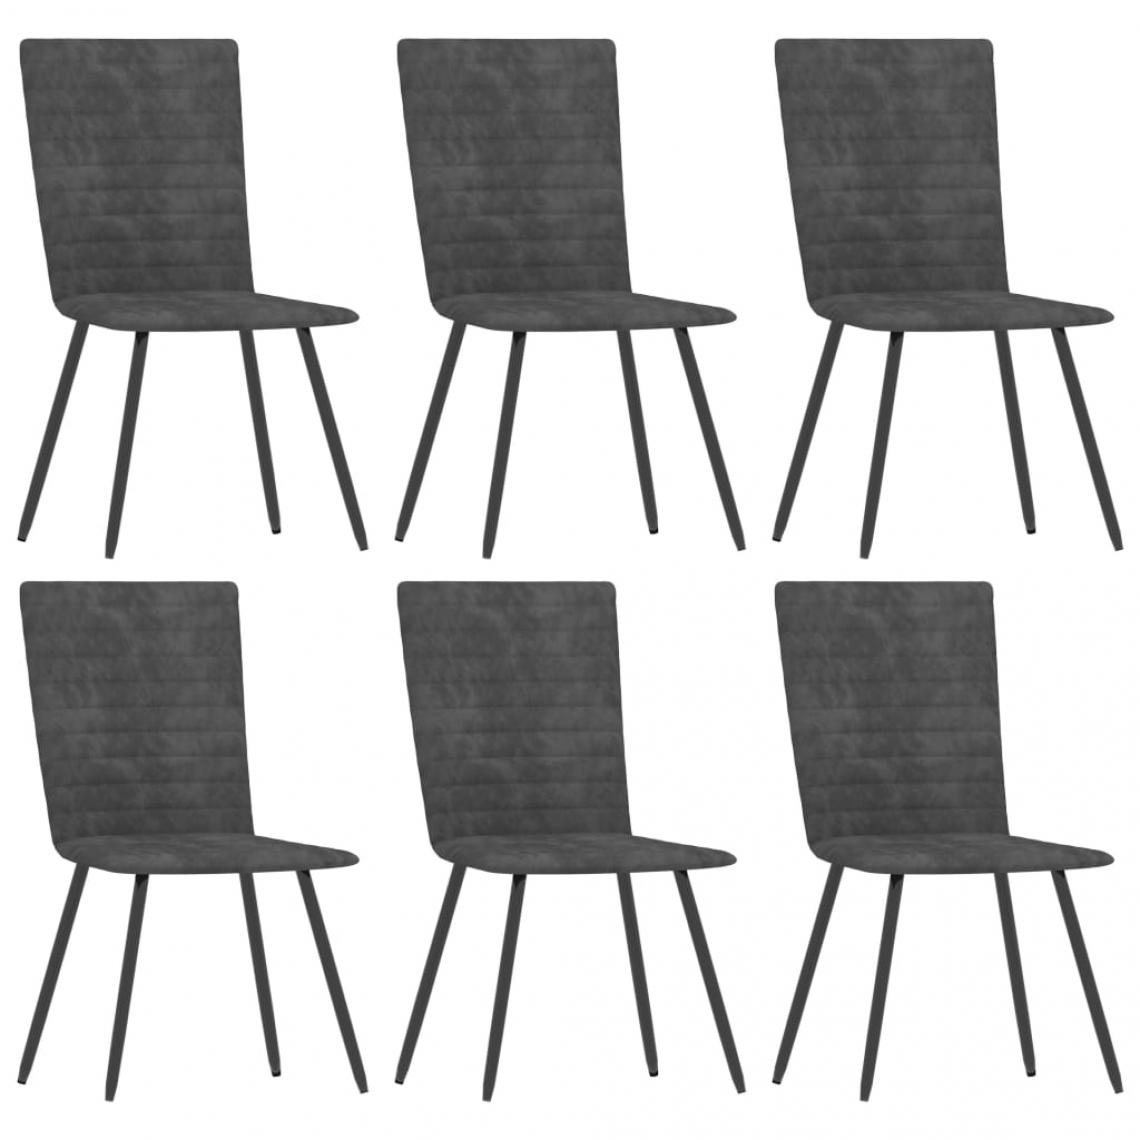 Decoshop26 - Lot de 6 chaises de salle à manger cuisine design classique velours gris CDS022509 - Chaises